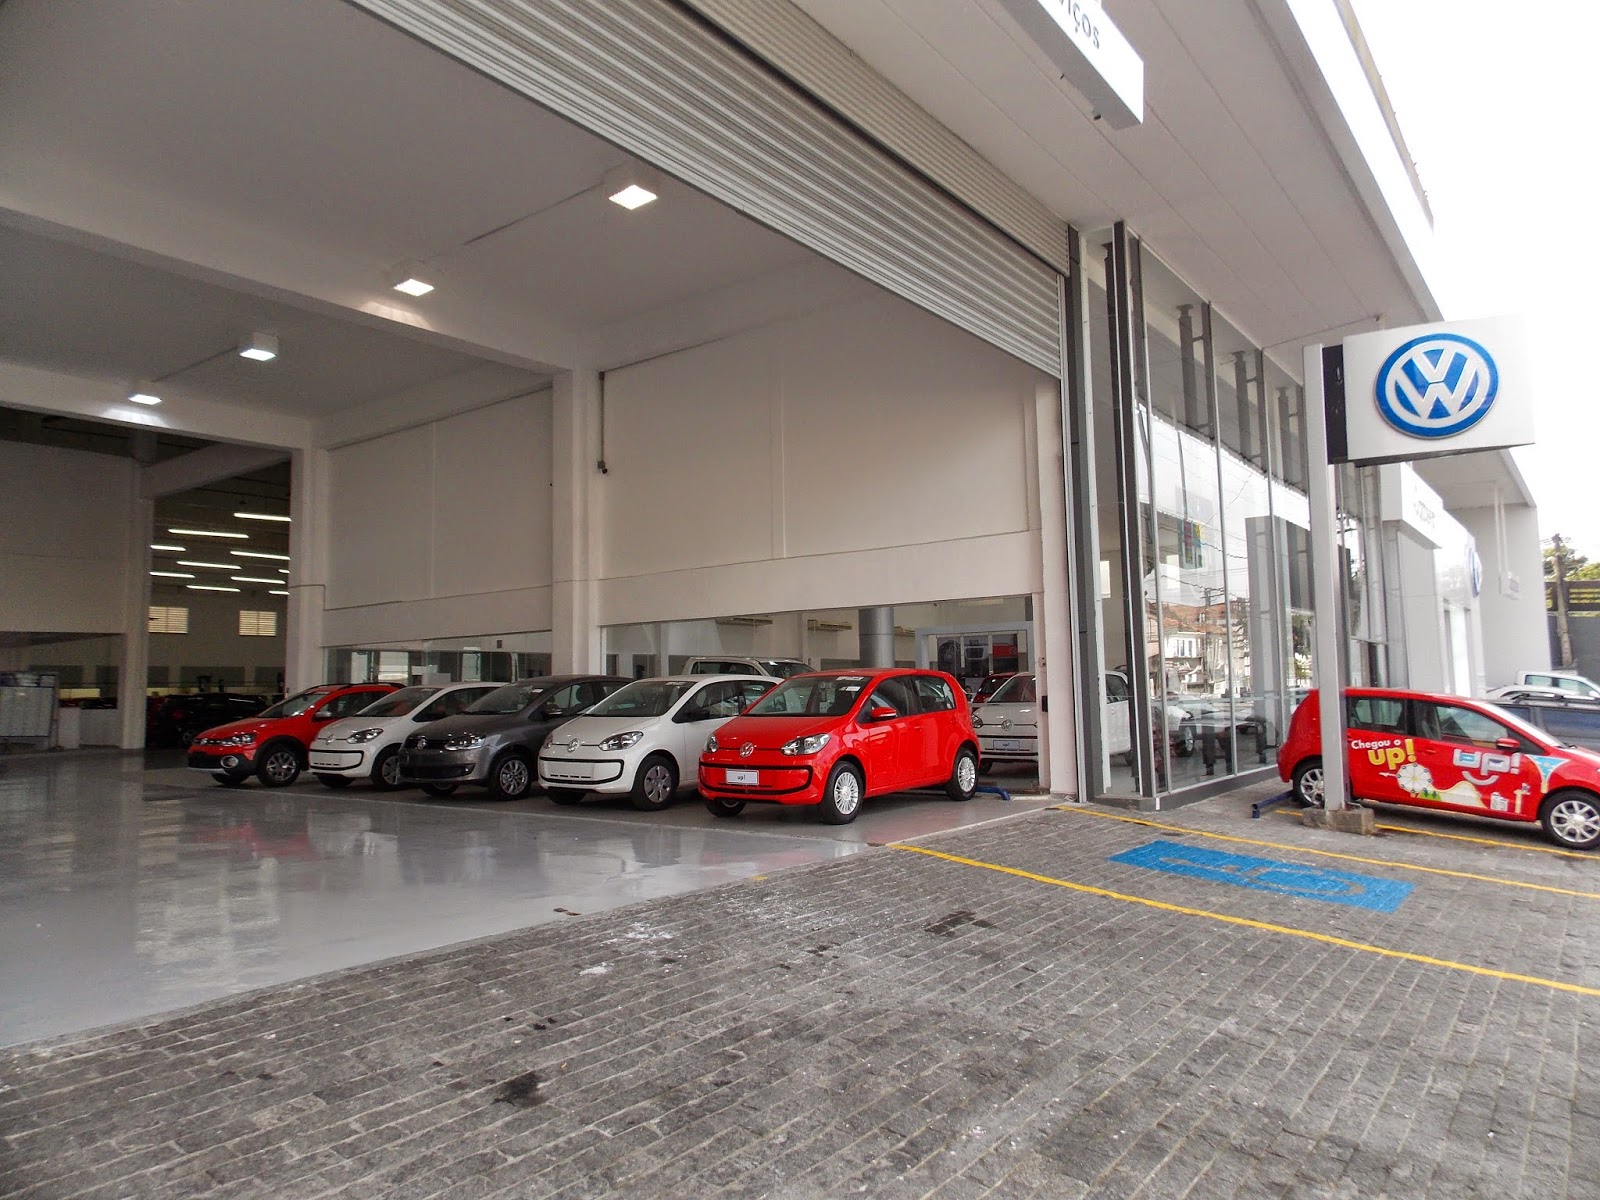 ConcettoMotors Volkswagen inaugura nova concessionária na cidade de Santos jpg (1600x1200)